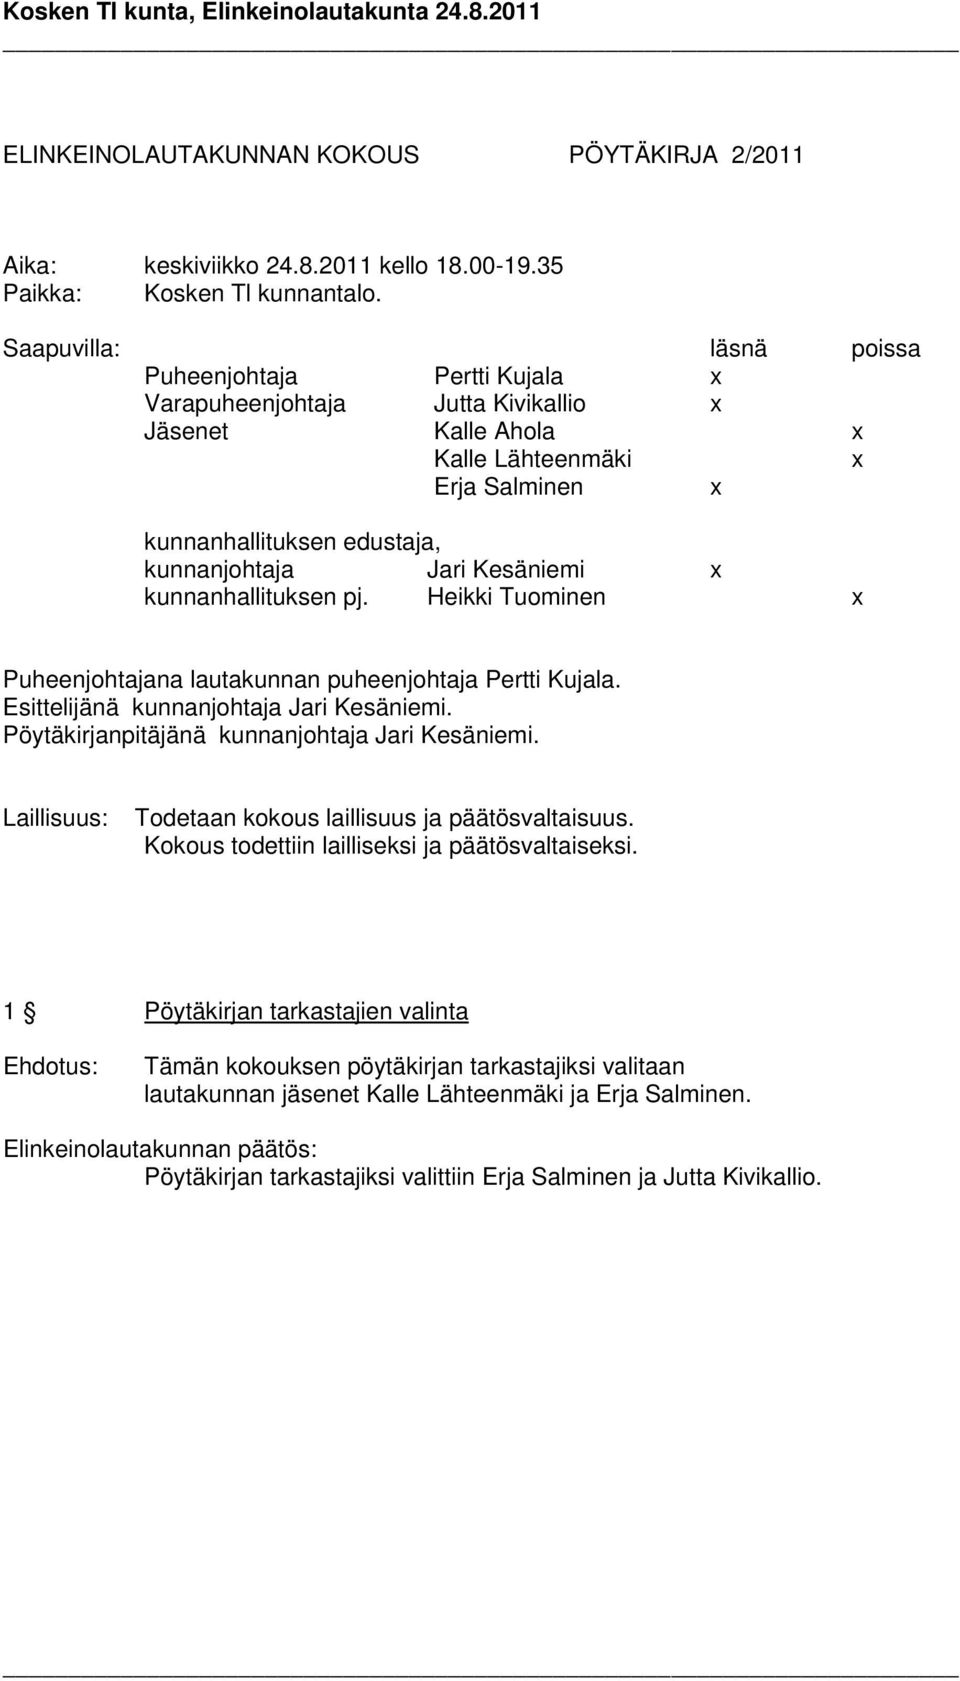 Kesäniemi x kunnanhallituksen pj. Heikki Tuominen x Puheenjohtajana lautakunnan puheenjohtaja Pertti Kujala. Esittelijänä kunnanjohtaja Jari Kesäniemi.